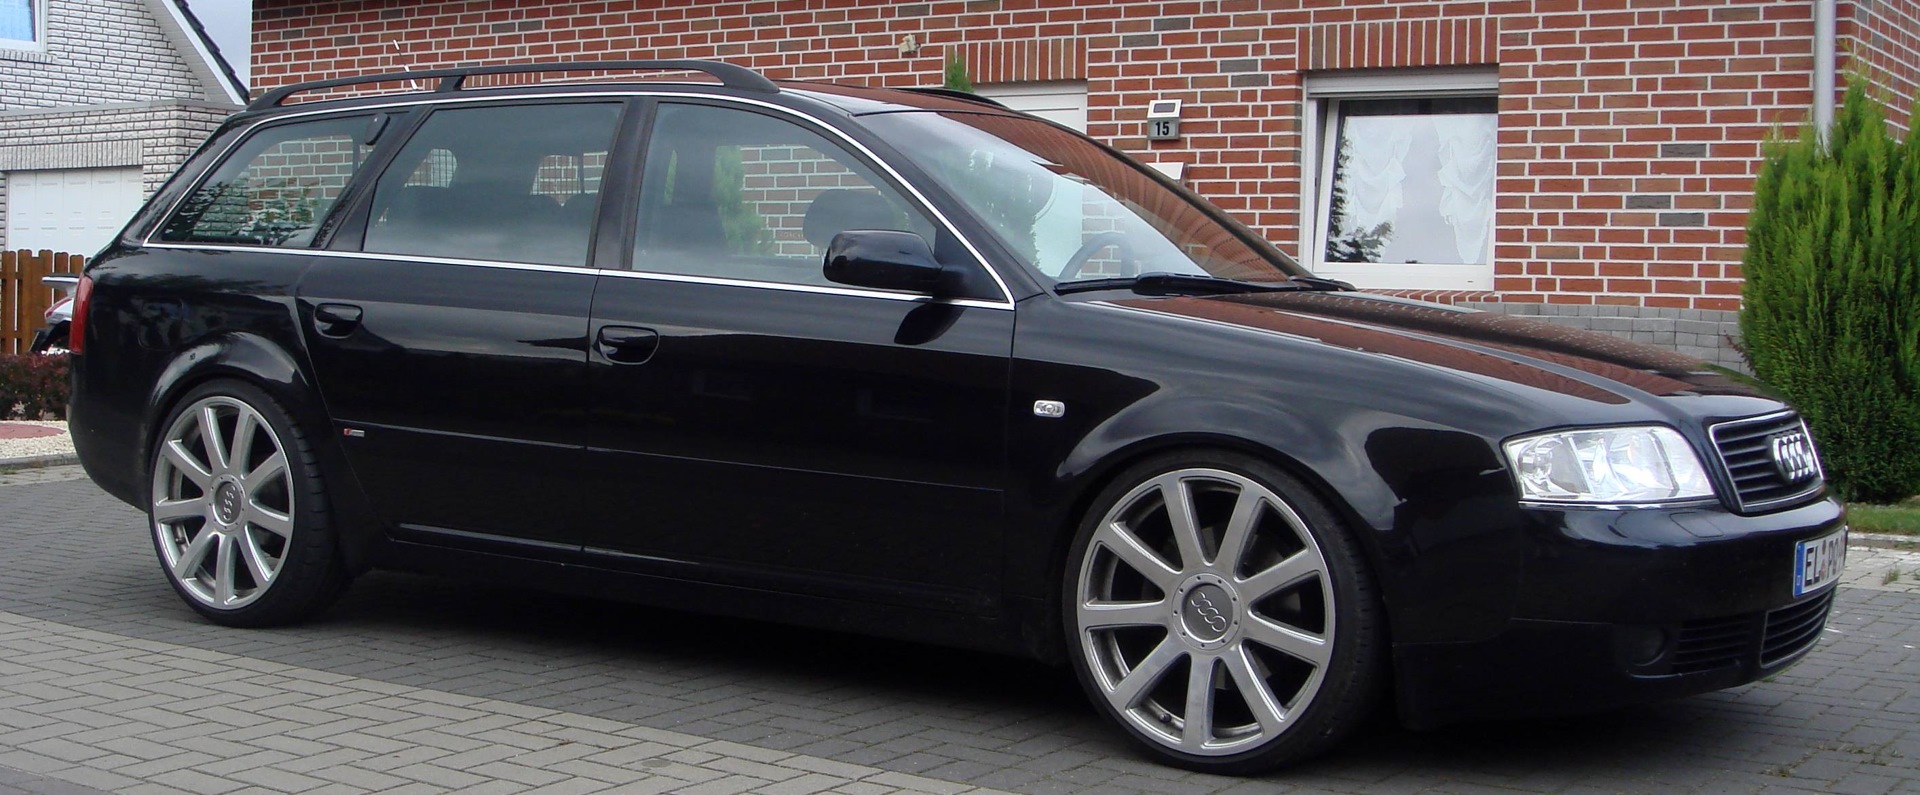 Audi a6 c5 двери. Диски Ауди s6 c5. Audi a6 c5 r18. Ауди а6 с5 универсал на дисках. Audi a6 c6 avant s-line.